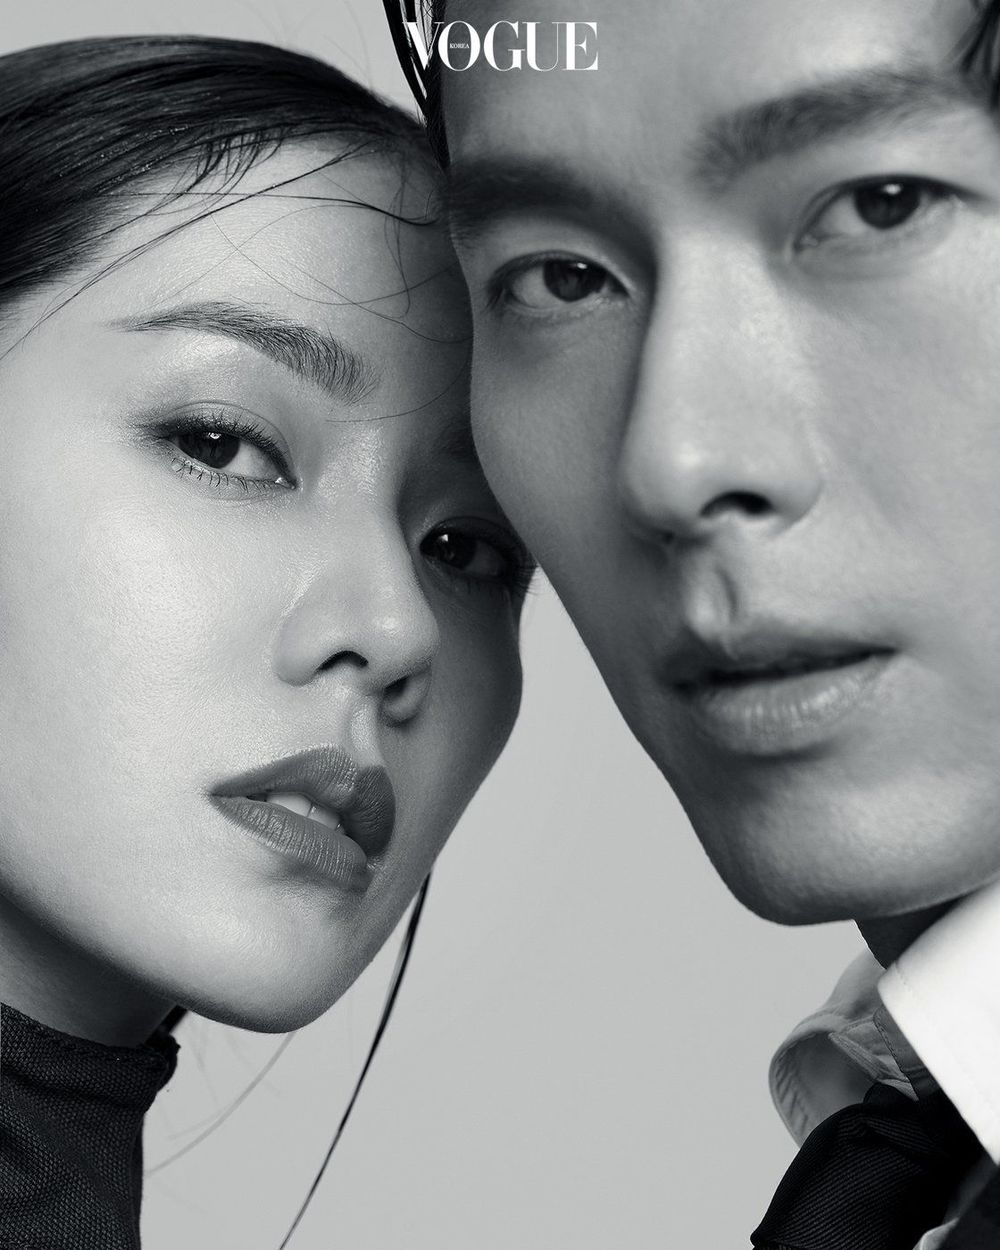  
Gương mặt của Hyun Bin và Son Ye Jin đặt cạnh nhau cứ như là một tác phẩm nghệ thuật. (Ảnh: Vogue)